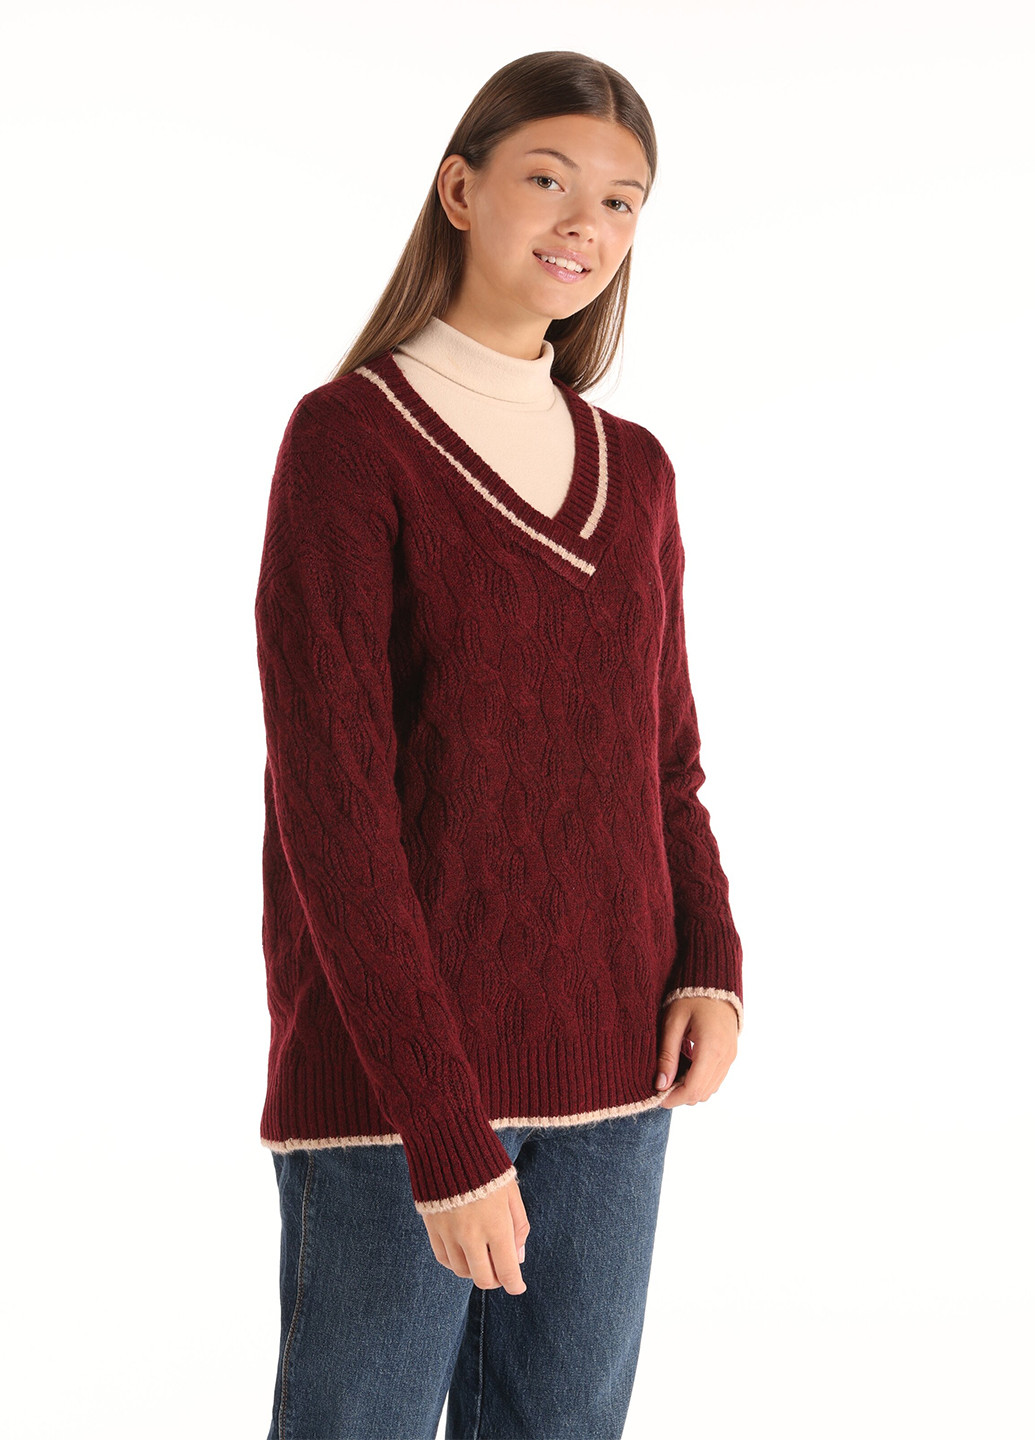 Бордовый демисезонный пуловер пуловер Colin's